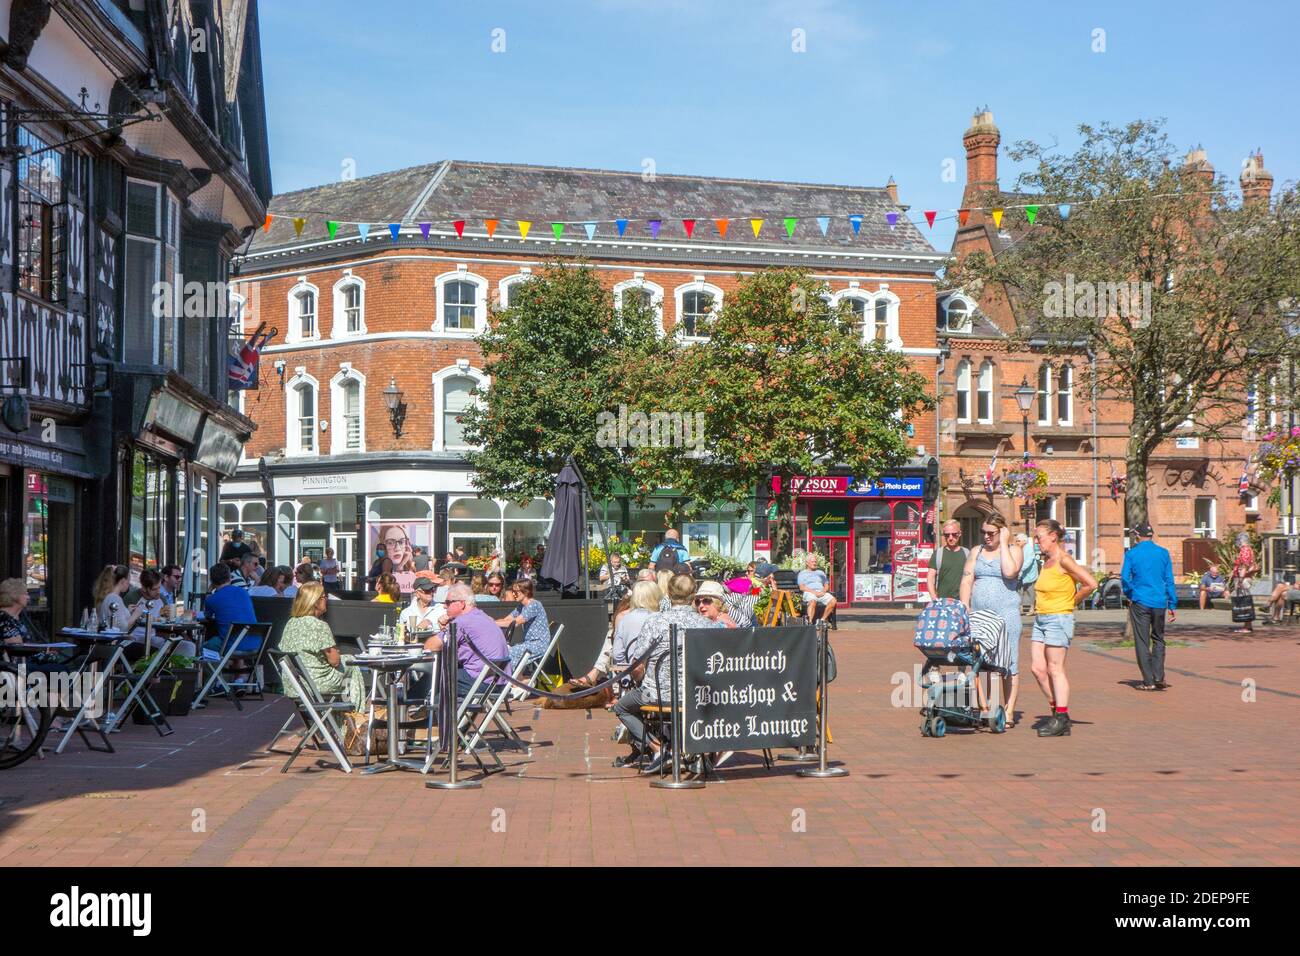 Les acheteurs et les personnes qui mangent et boivent à l'extérieur dans le Cheshire Ville de marché de Nantwich Cheshire Angleterre Banque D'Images